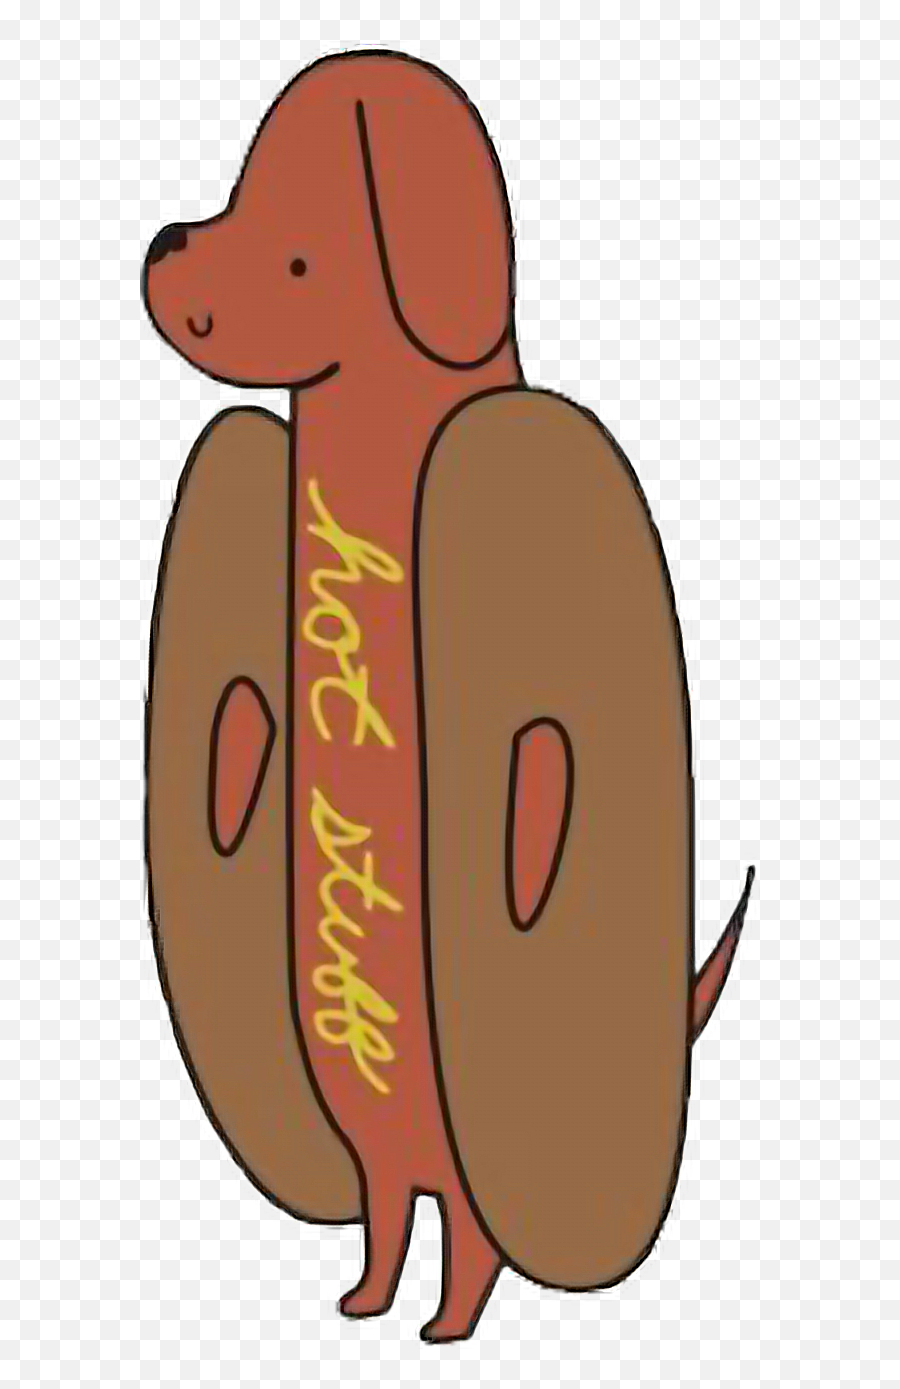 Hotstuff Weinerdog Weiner Dog Hotdog Meat Freetoedit Emoji,Weiner Emoji